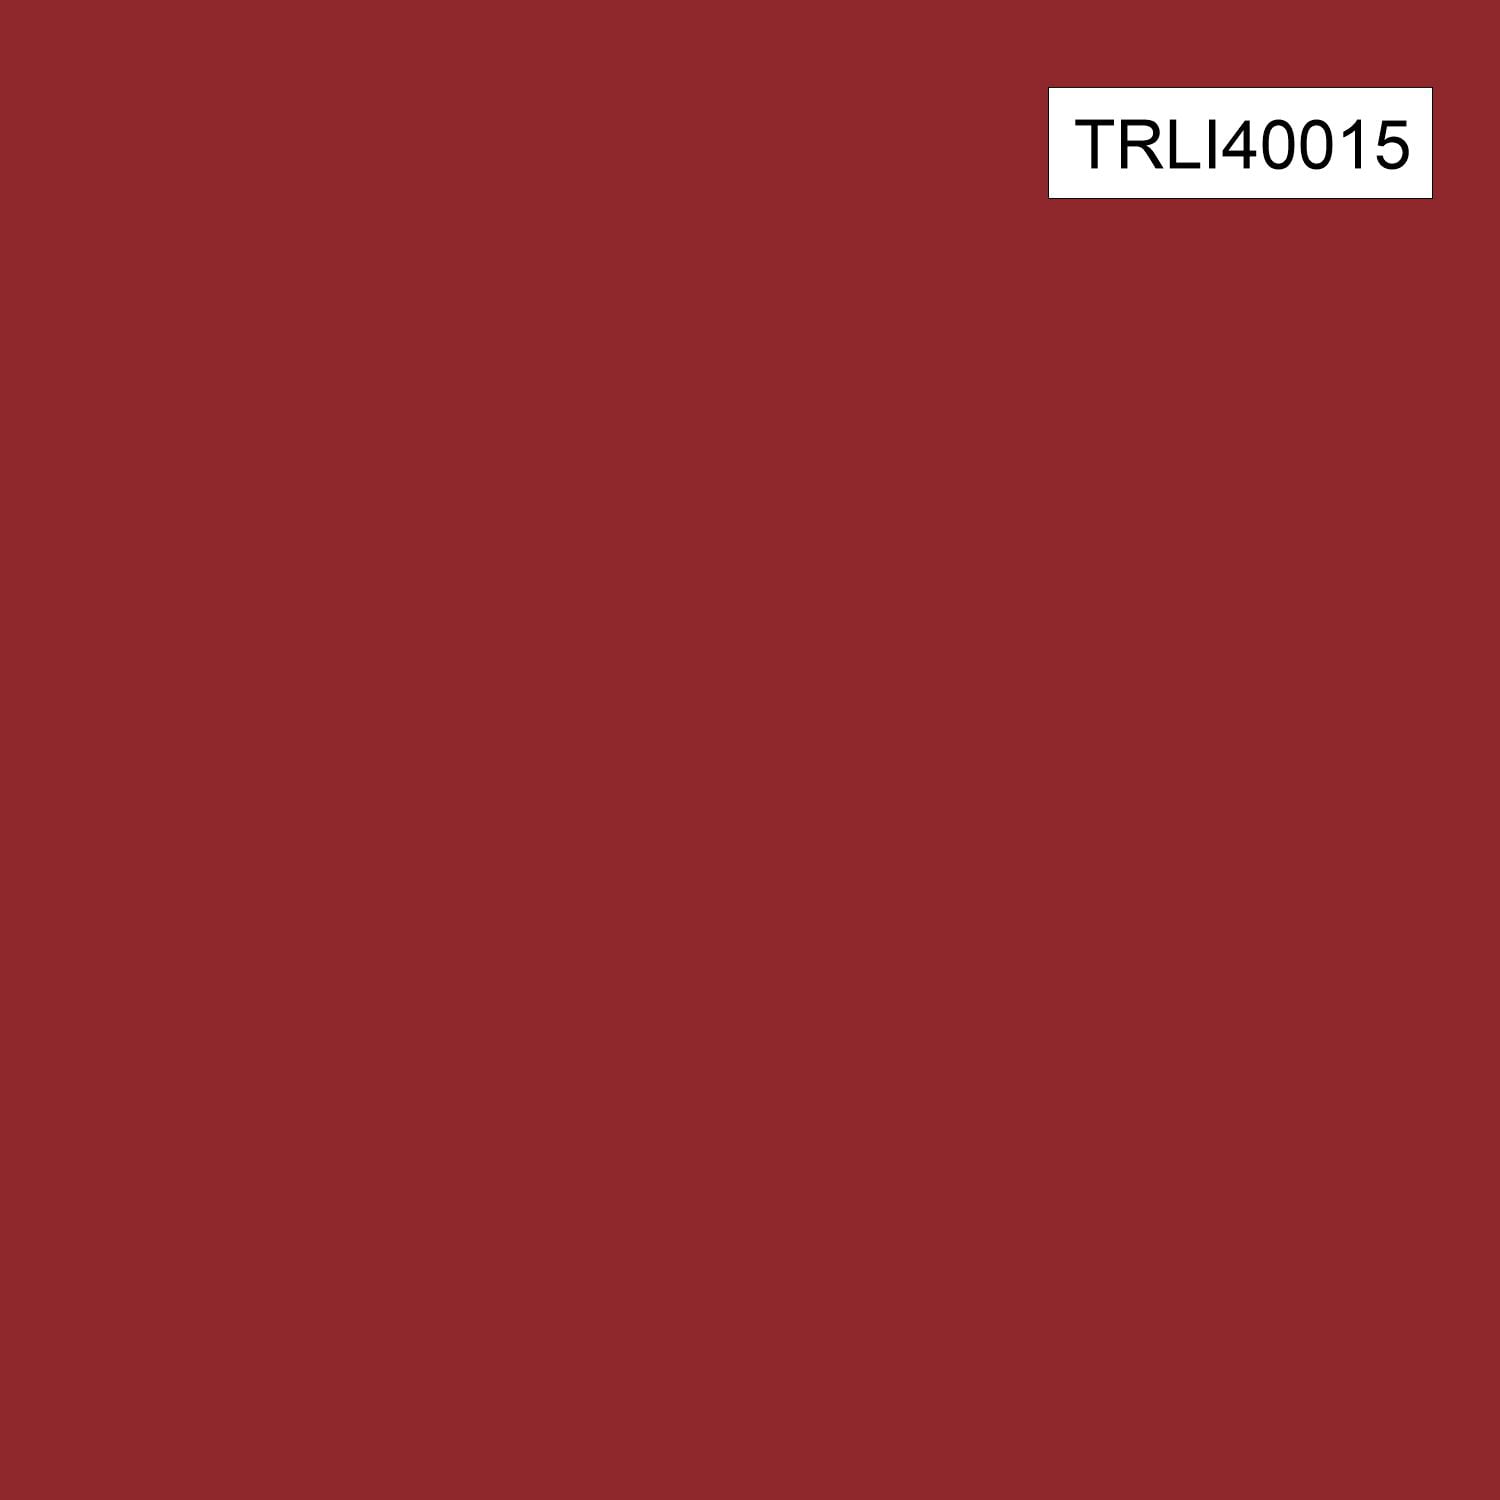 TECIDO TRICOLINE LISO 100% ALGODÃO - MARSALA - TRLI40015